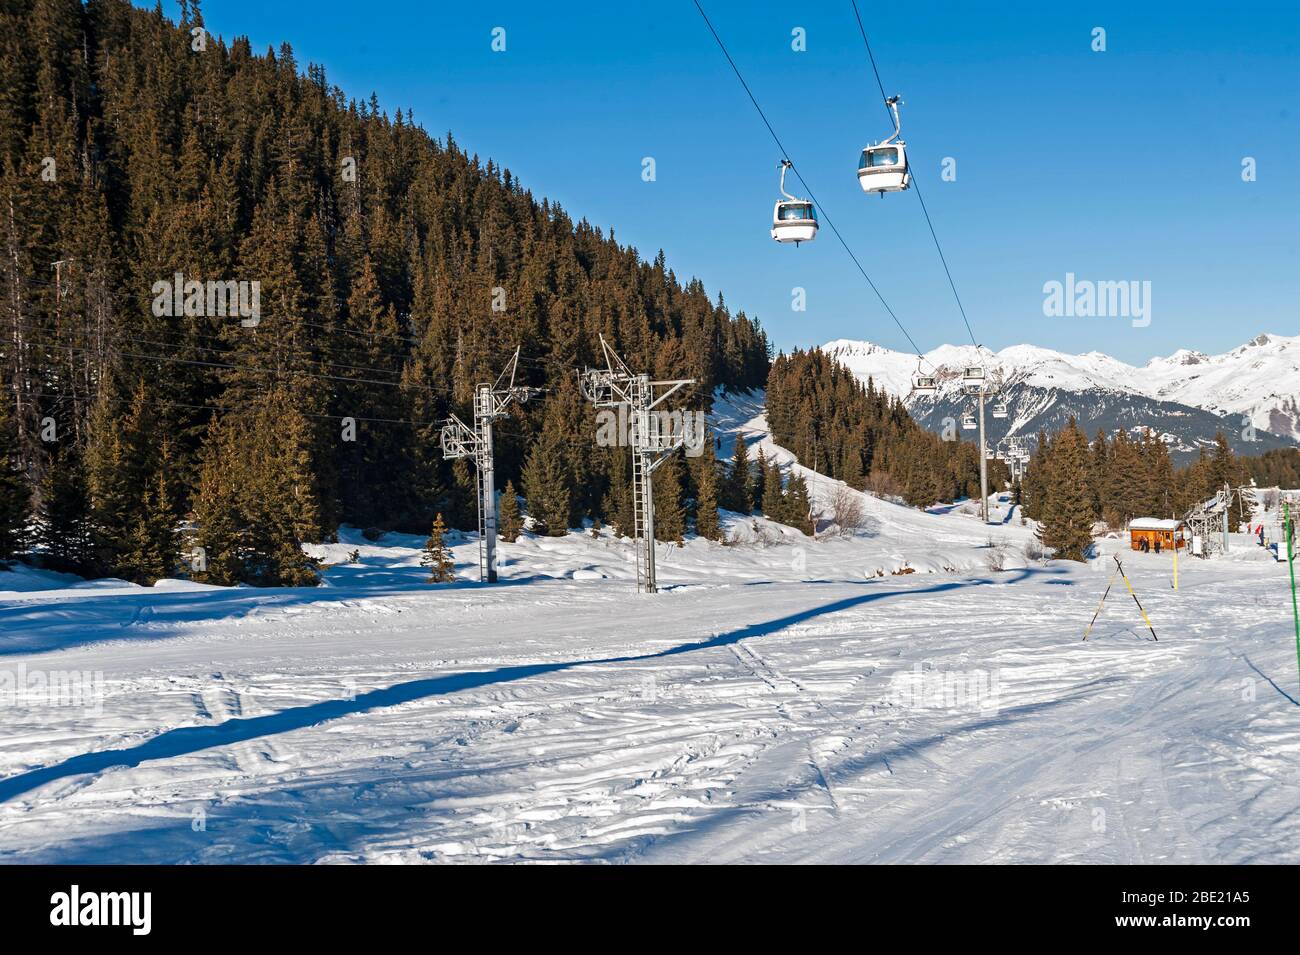 Blick auf eine alpine Skipiste Piste mit Seilbahn Lift auf Bergseite Stockfoto